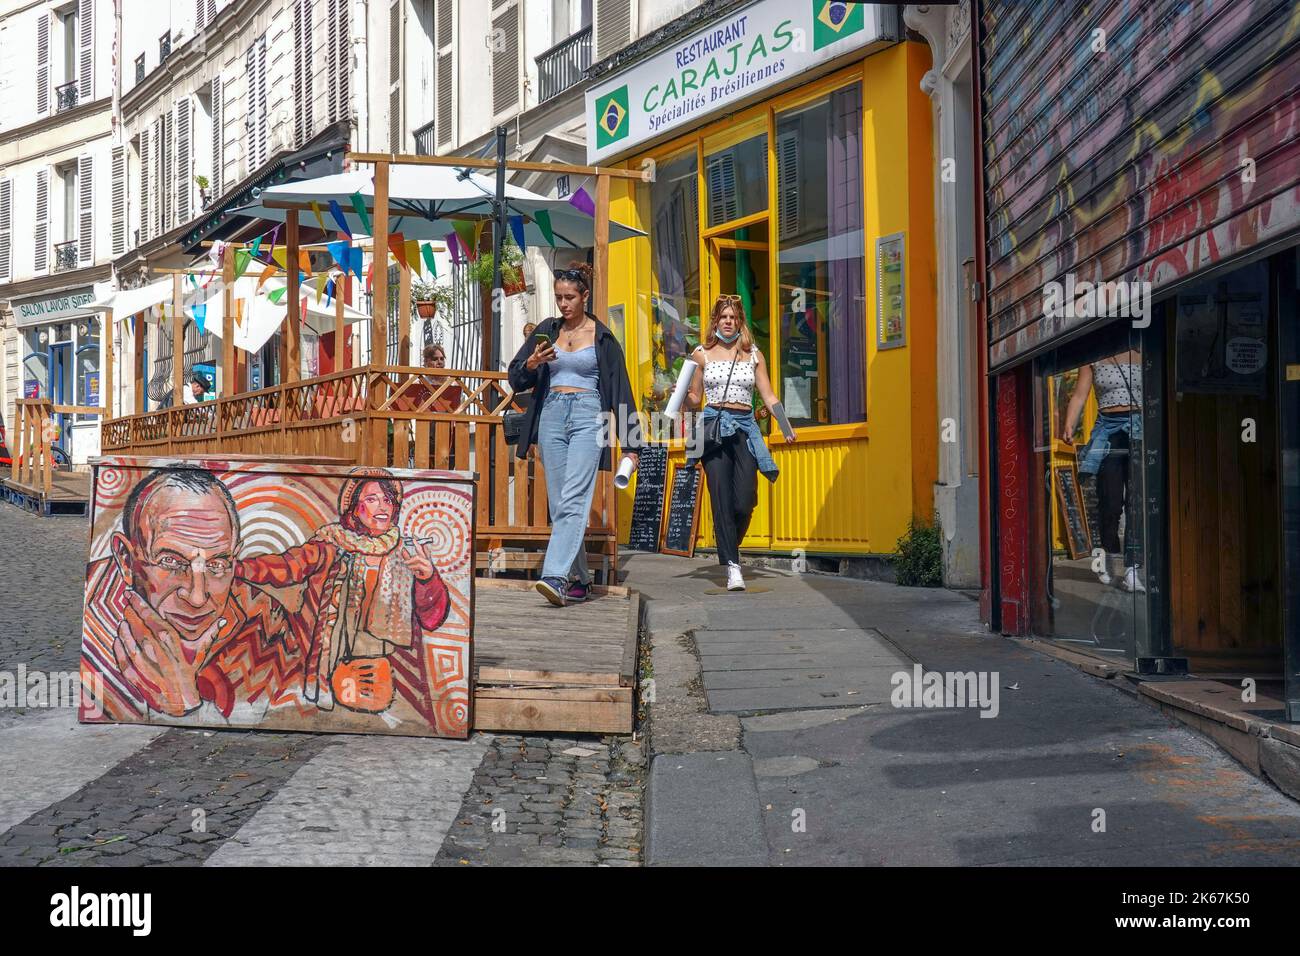 Francia París, el distrito de Montmartre en el distrito the18th, es principalmente conocido por su historia artística y como un distrito de clubes nocturnos. Foto © Fabio Foto de stock